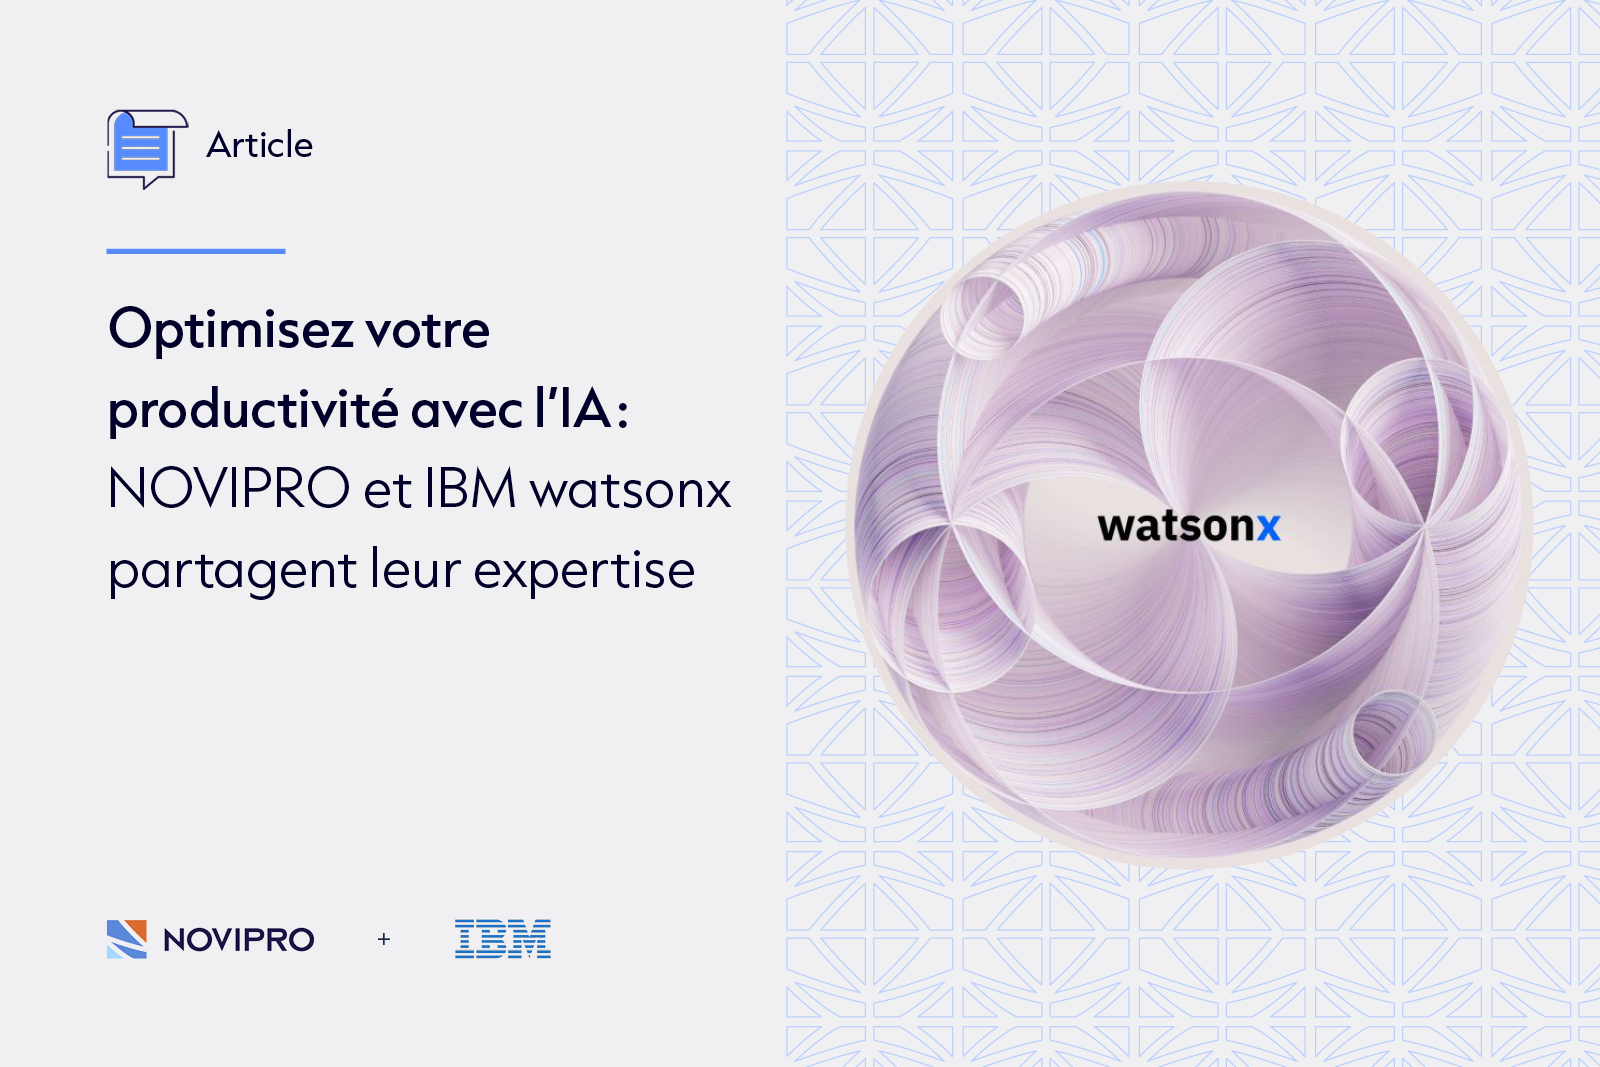 Optimisez votre productivité avec l'IA : NOVIPRO et IBM watsonx partagent leur expertise